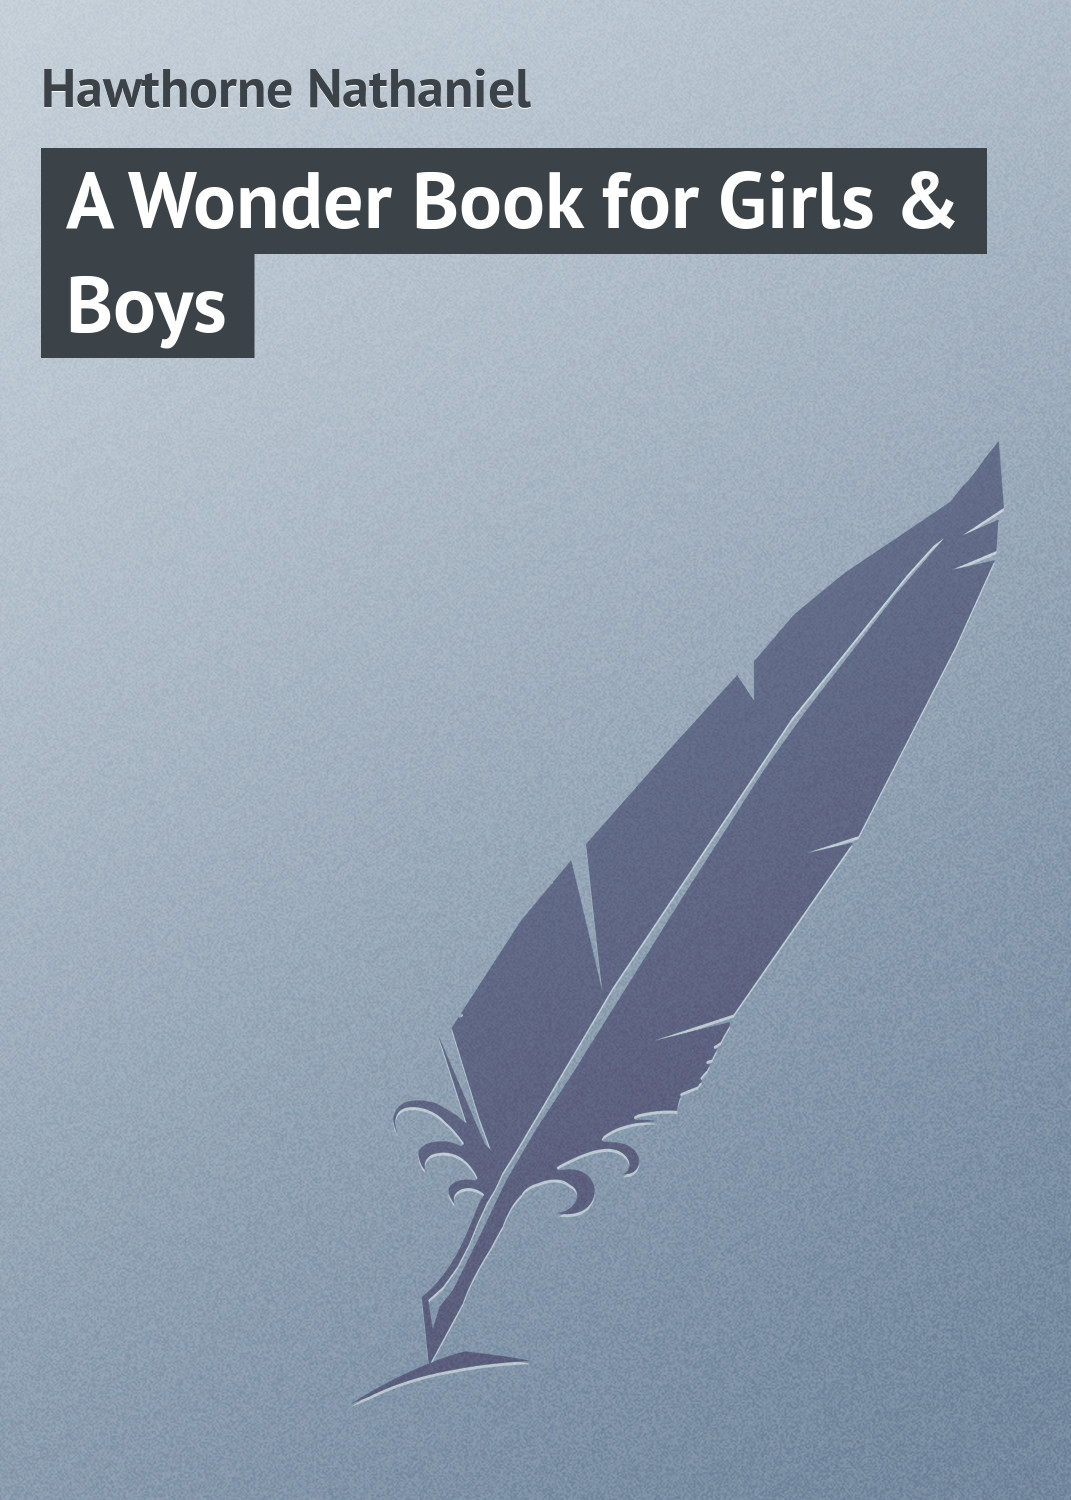 Книга A Wonder Book for Girls & Boys из серии , созданная Nathaniel Hawthorne, может относится к жанру Зарубежная классика. Стоимость электронной книги A Wonder Book for Girls & Boys с идентификатором 23147643 составляет 5.99 руб.